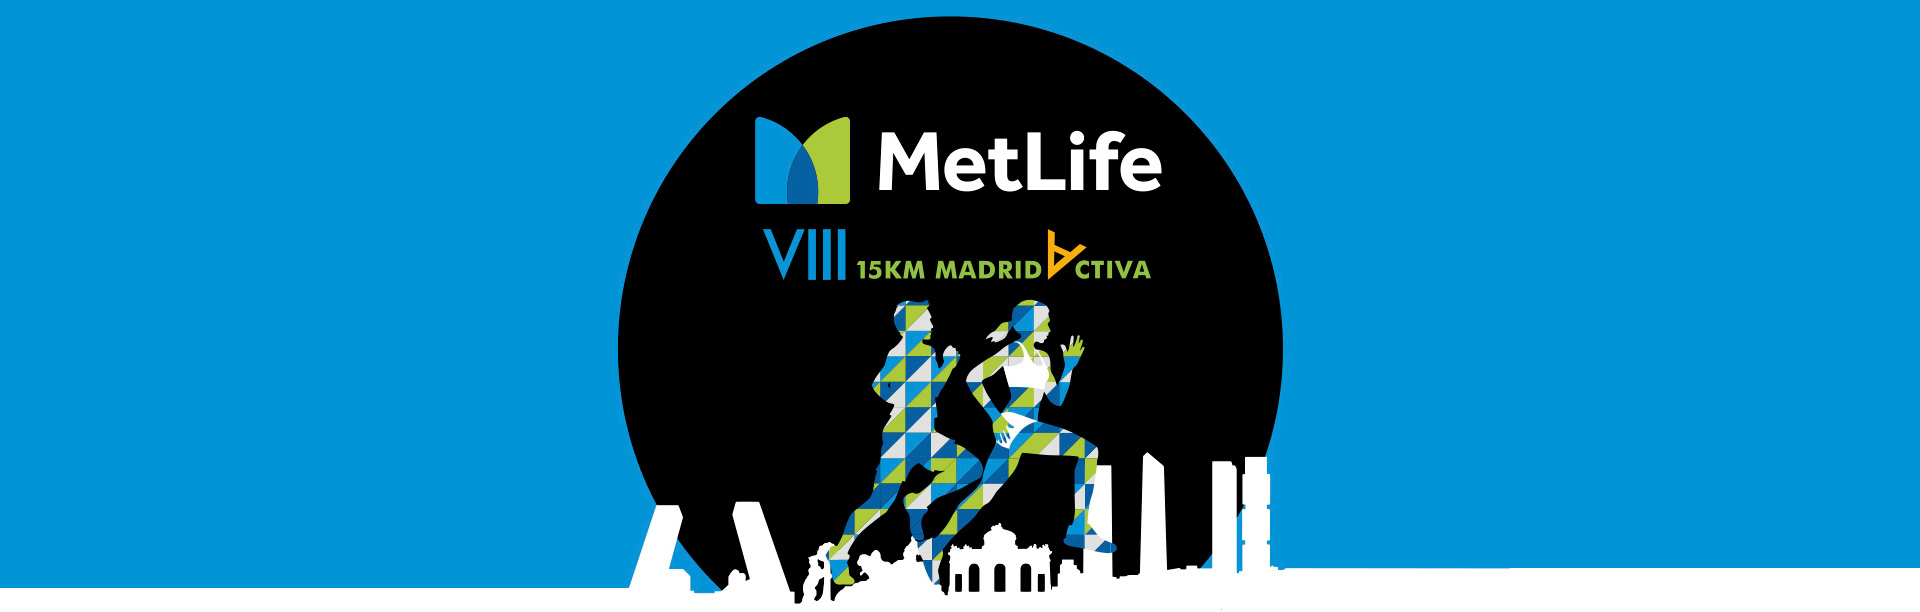 15KM MetLife Madrid Activa